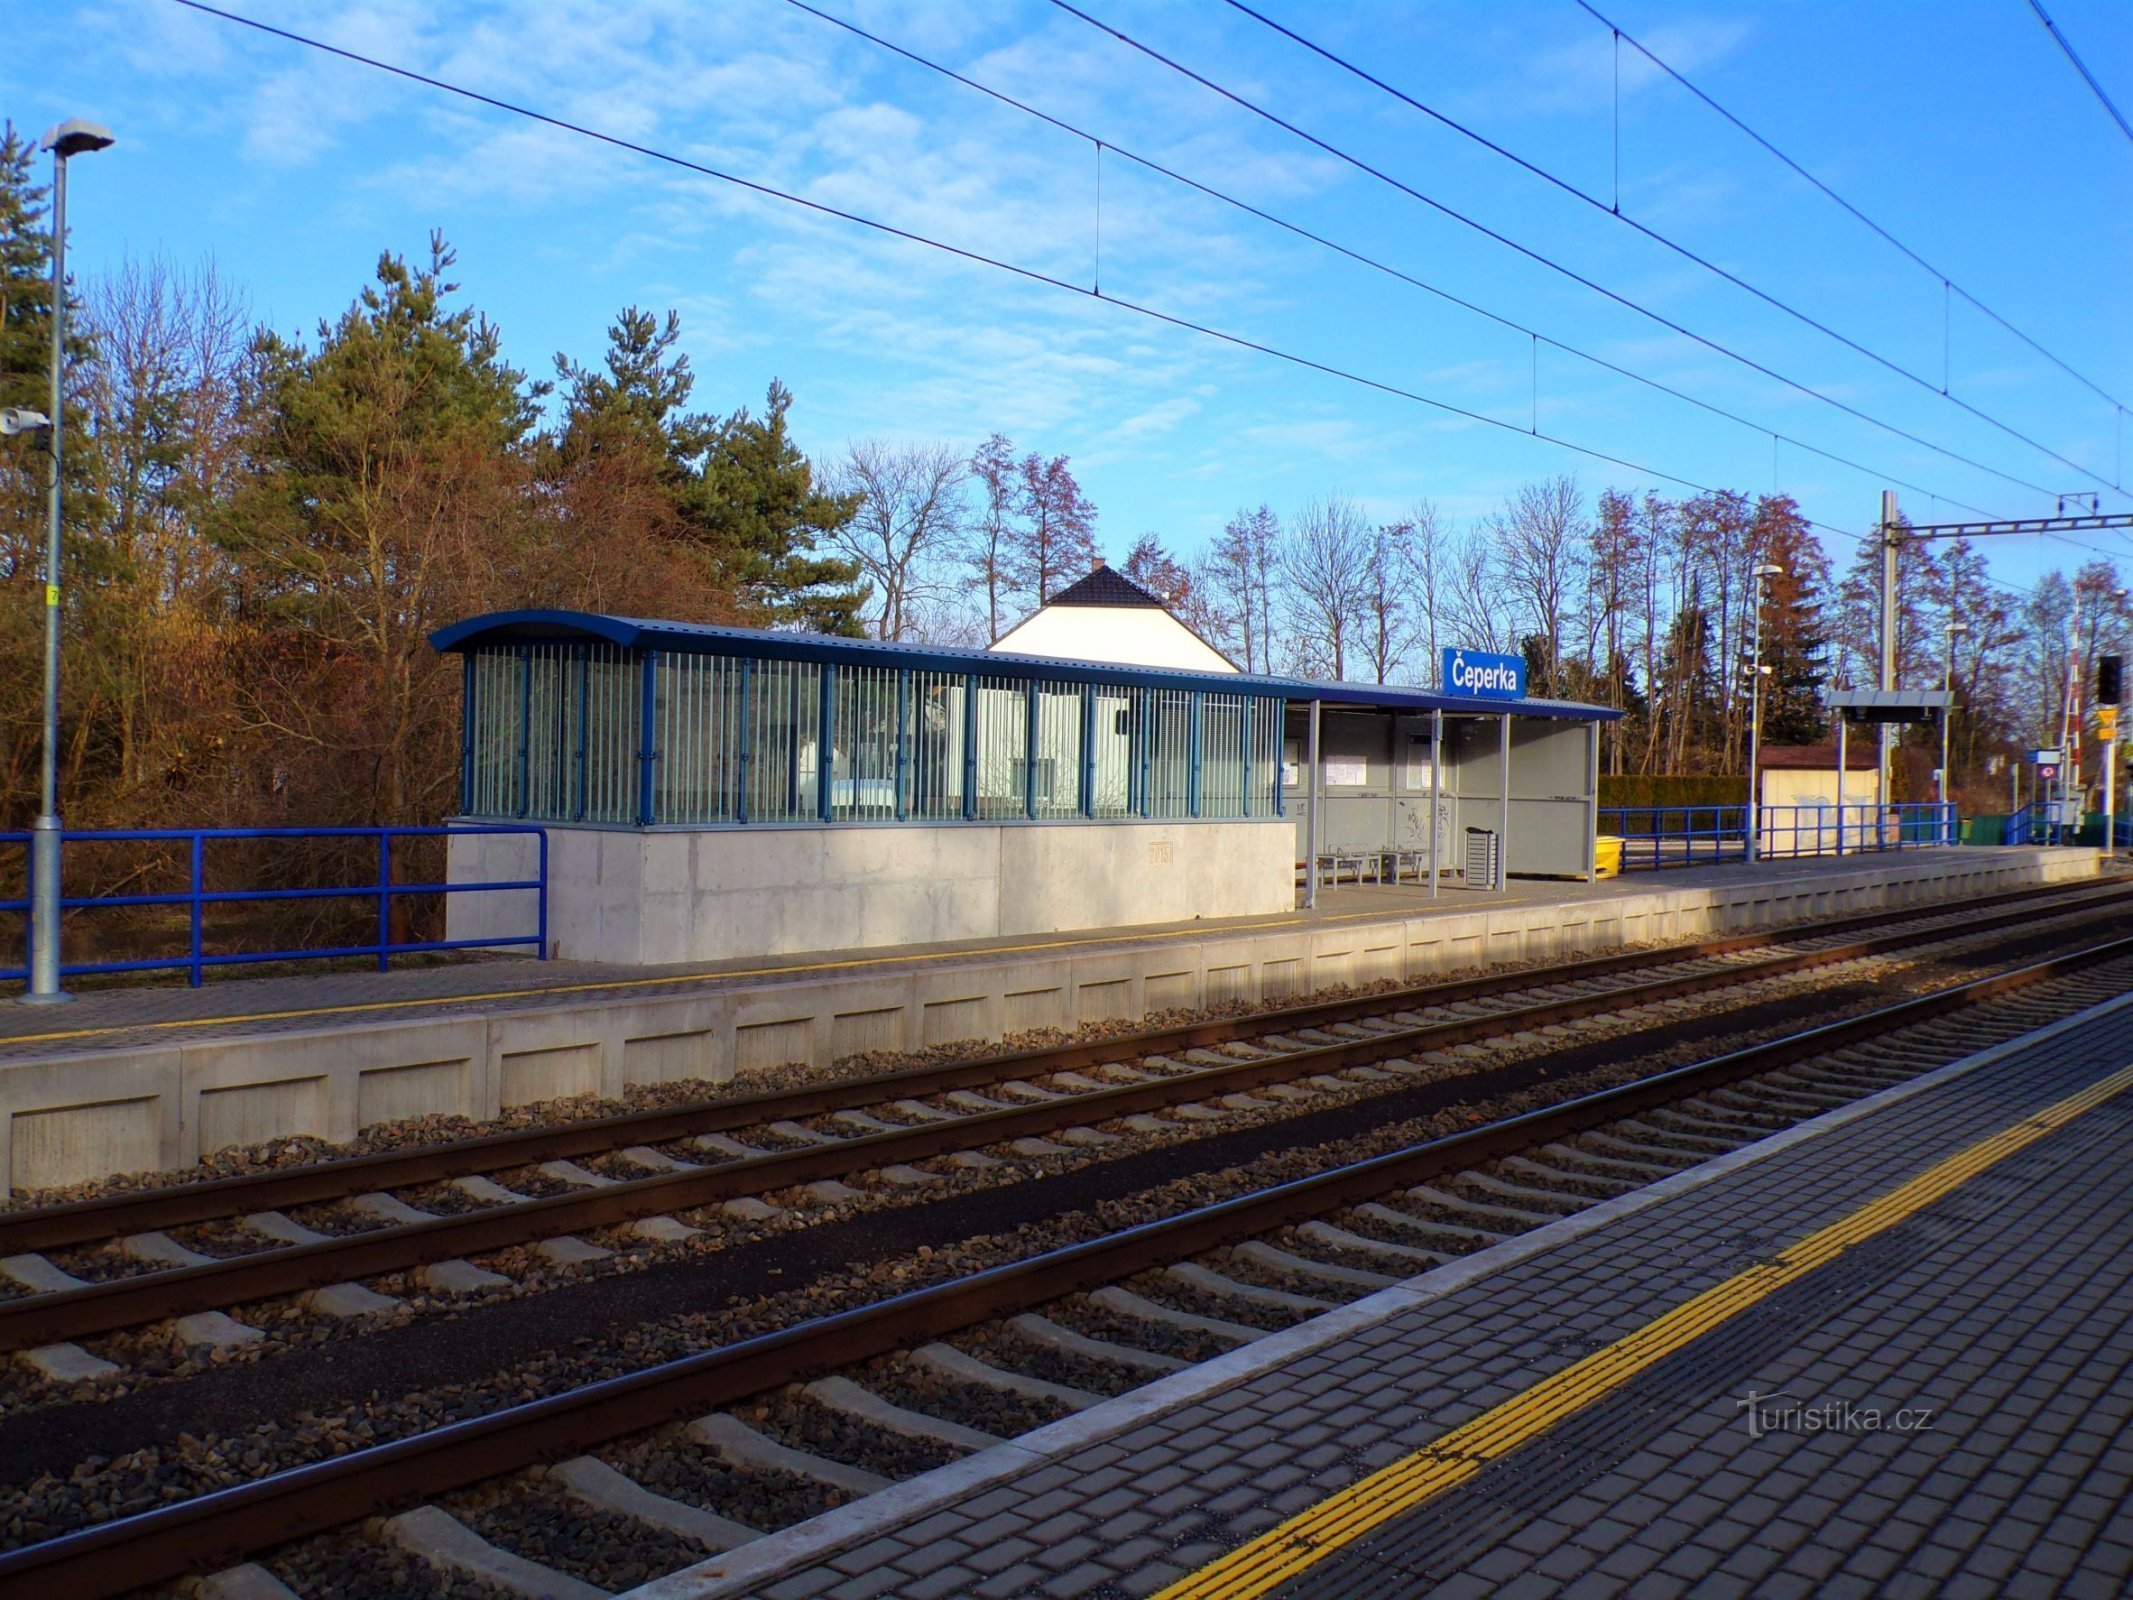 Bahnhof (Čeperka, 18.2.2022)